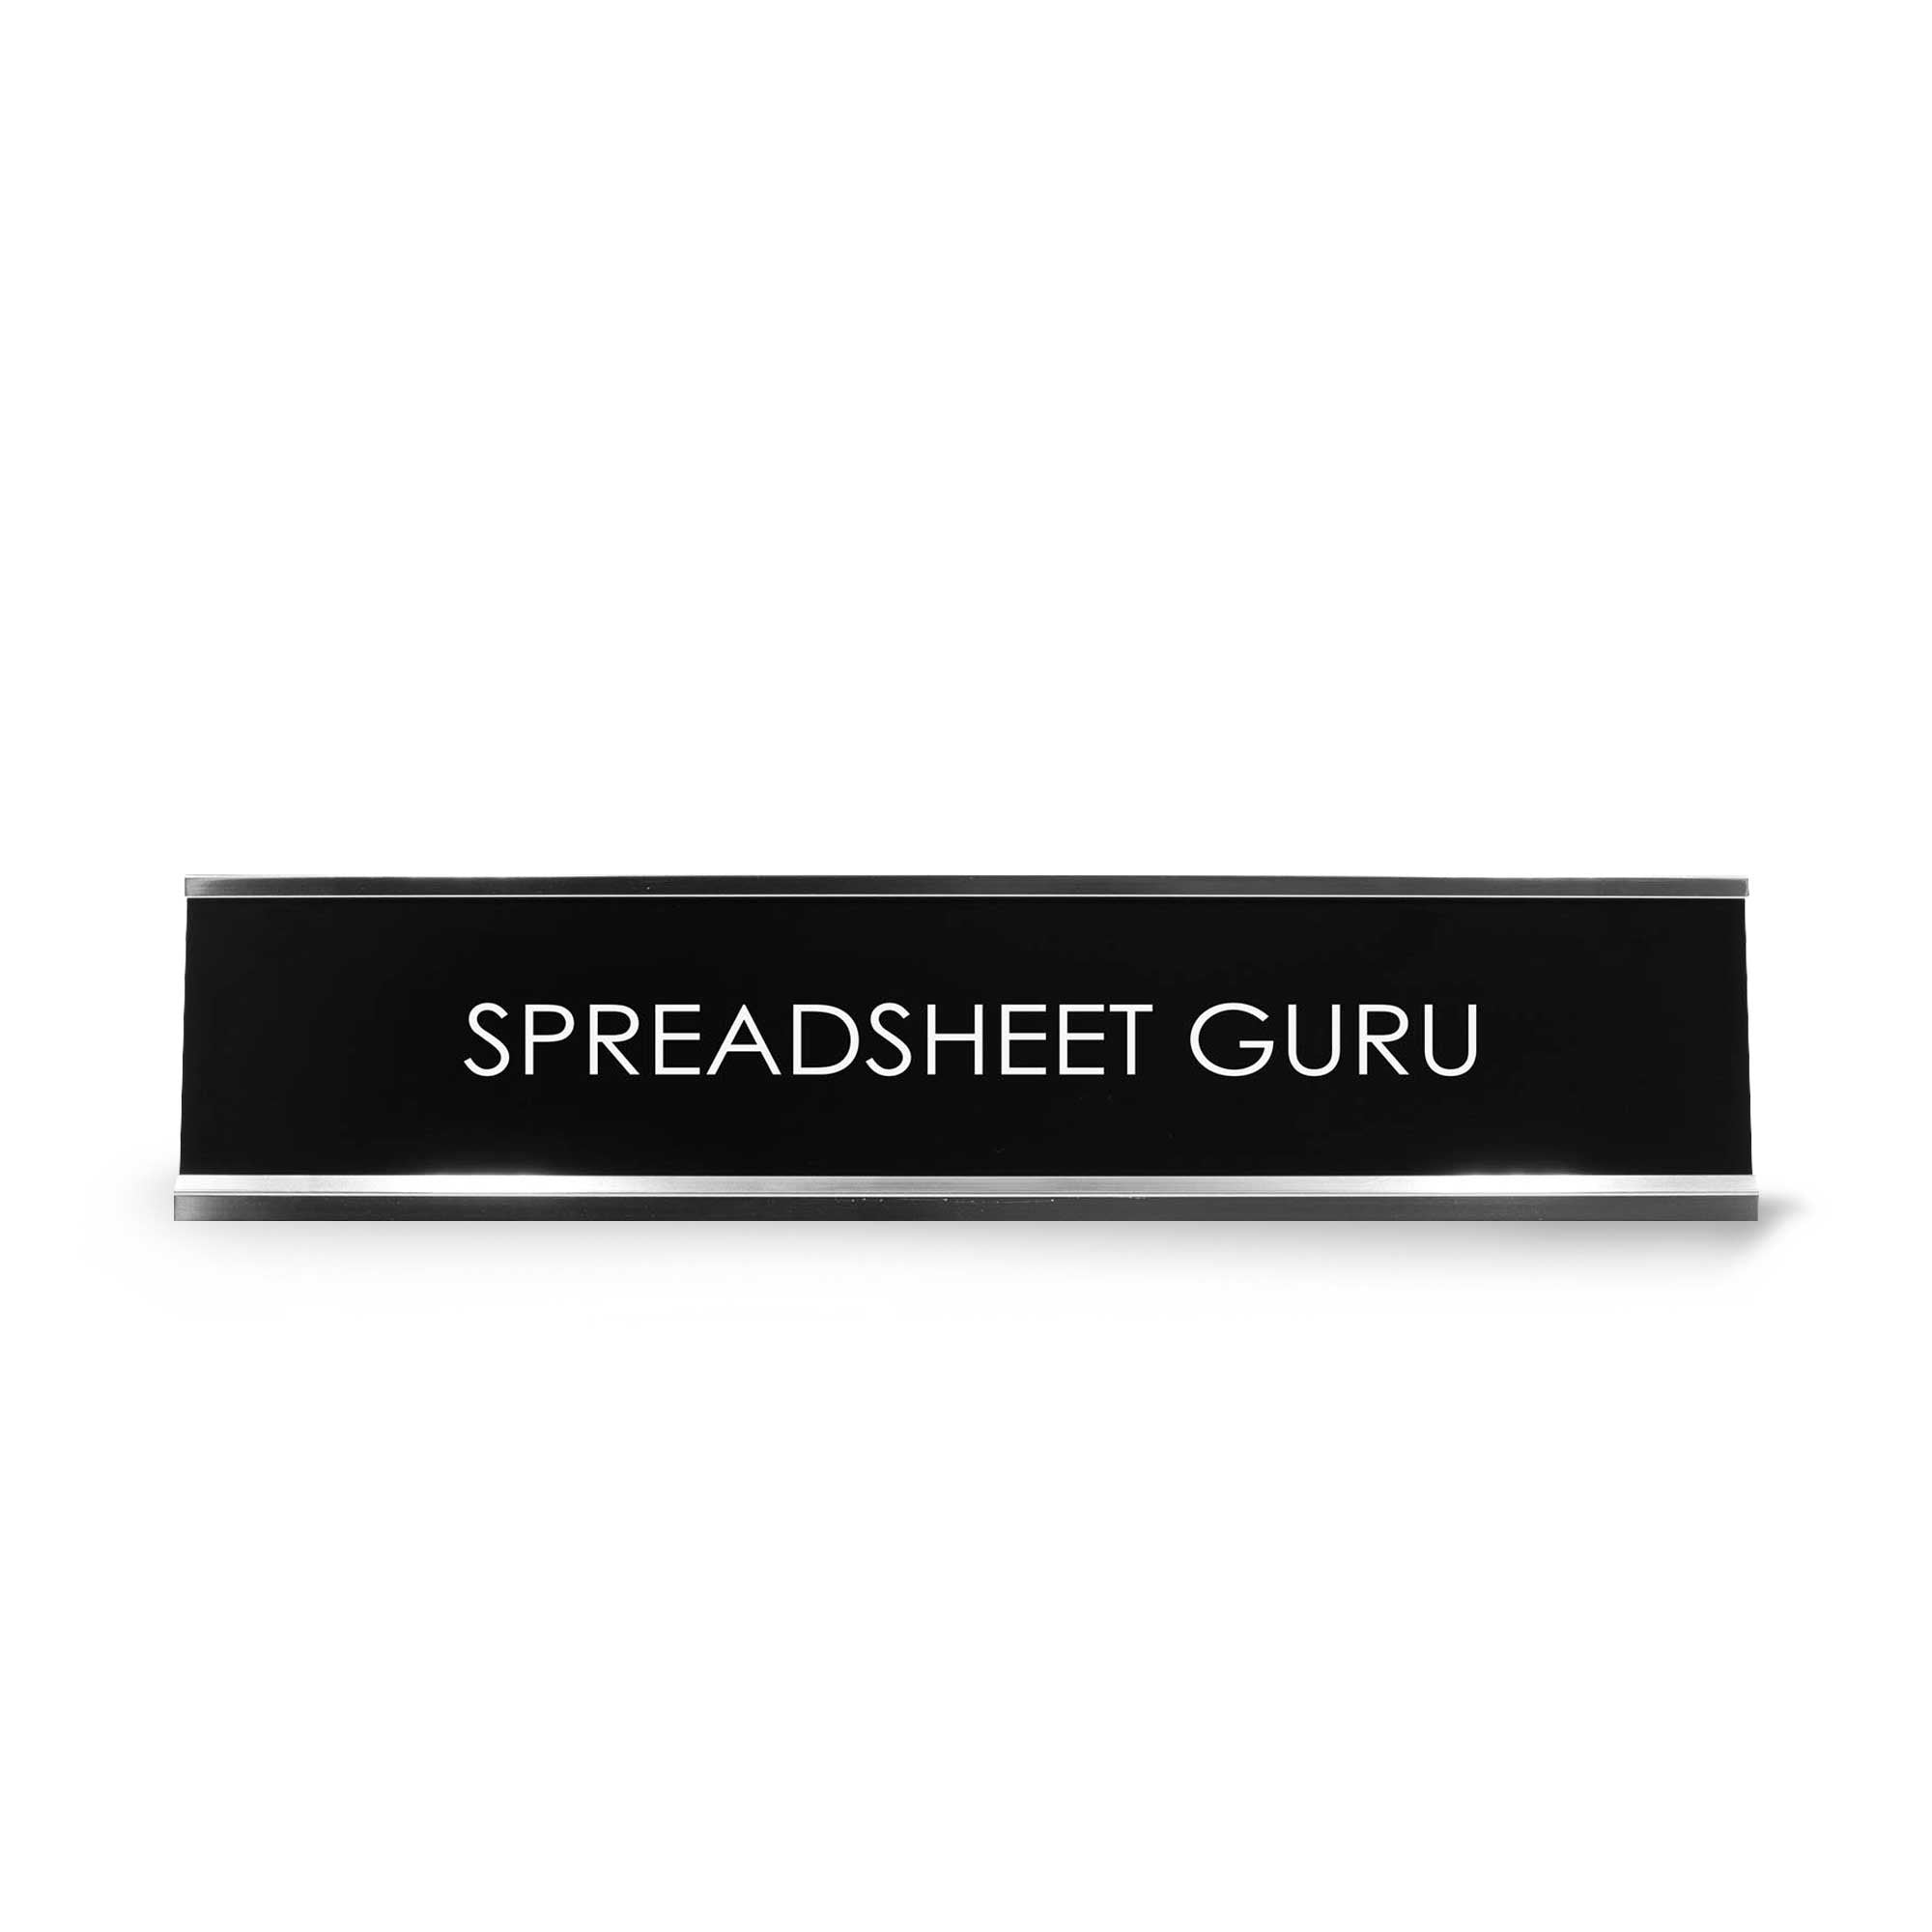 Spreadsheet Guru Novelty Desk Sign